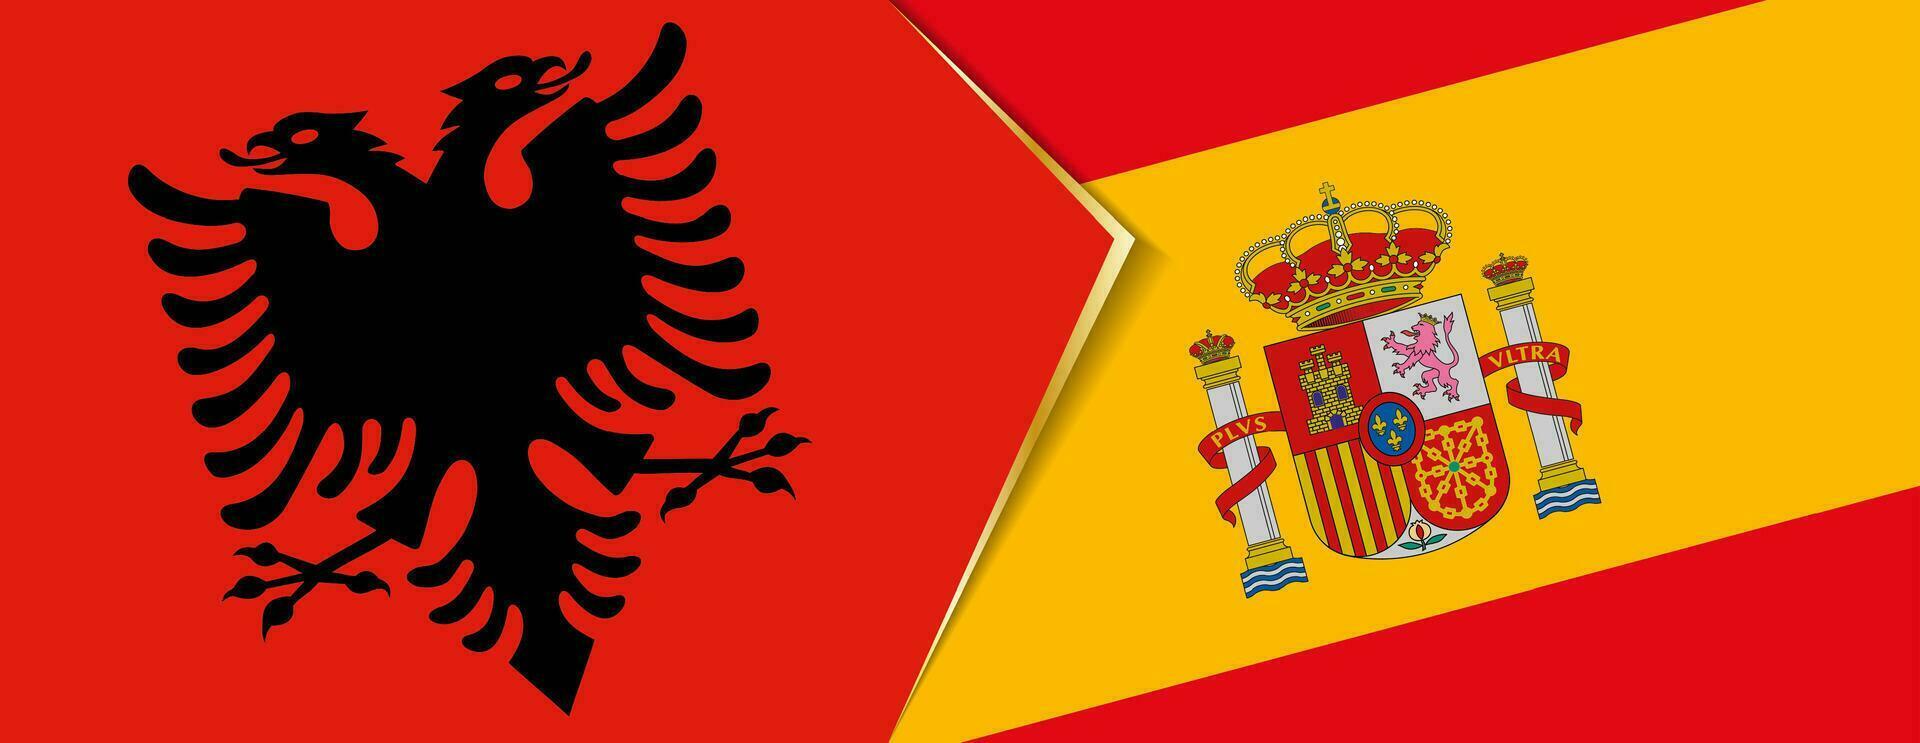 Albania e Spagna bandiere, Due vettore bandiere.